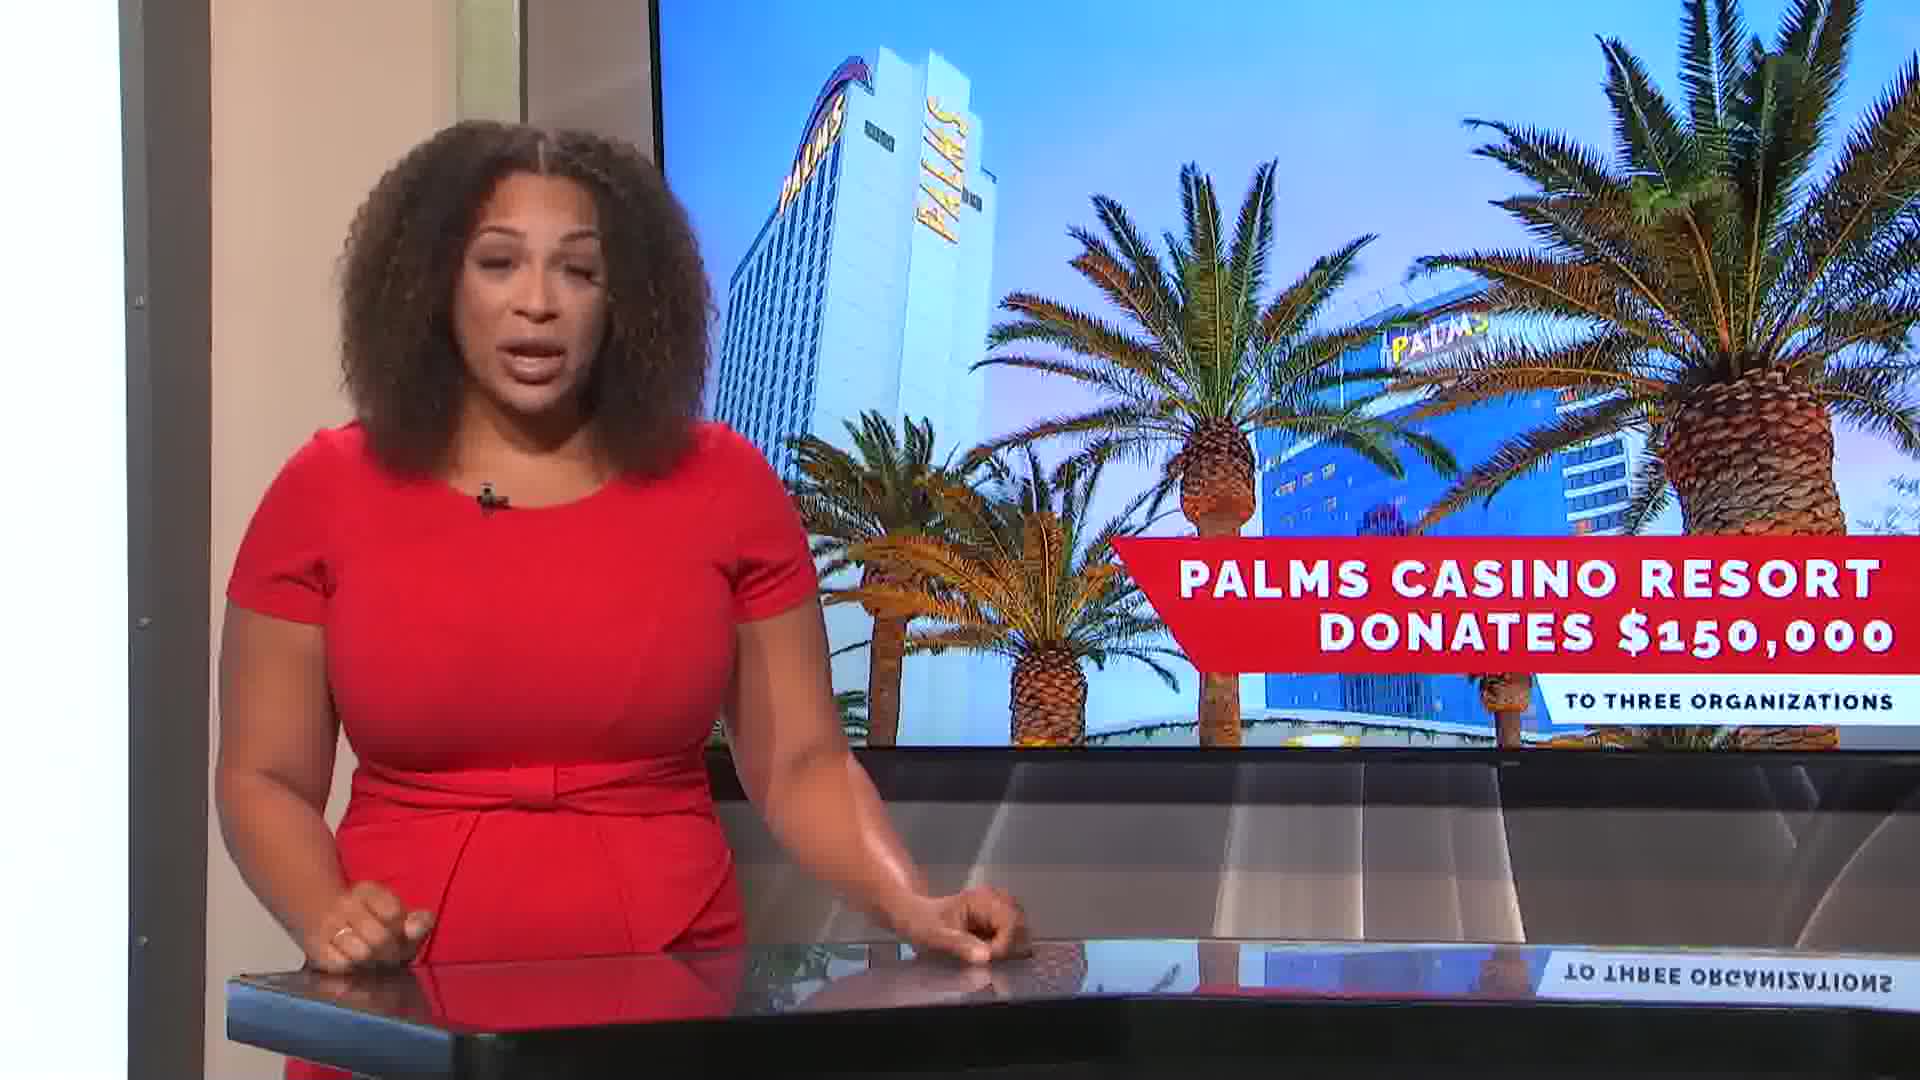 Palms Casino Resort donates $150,000